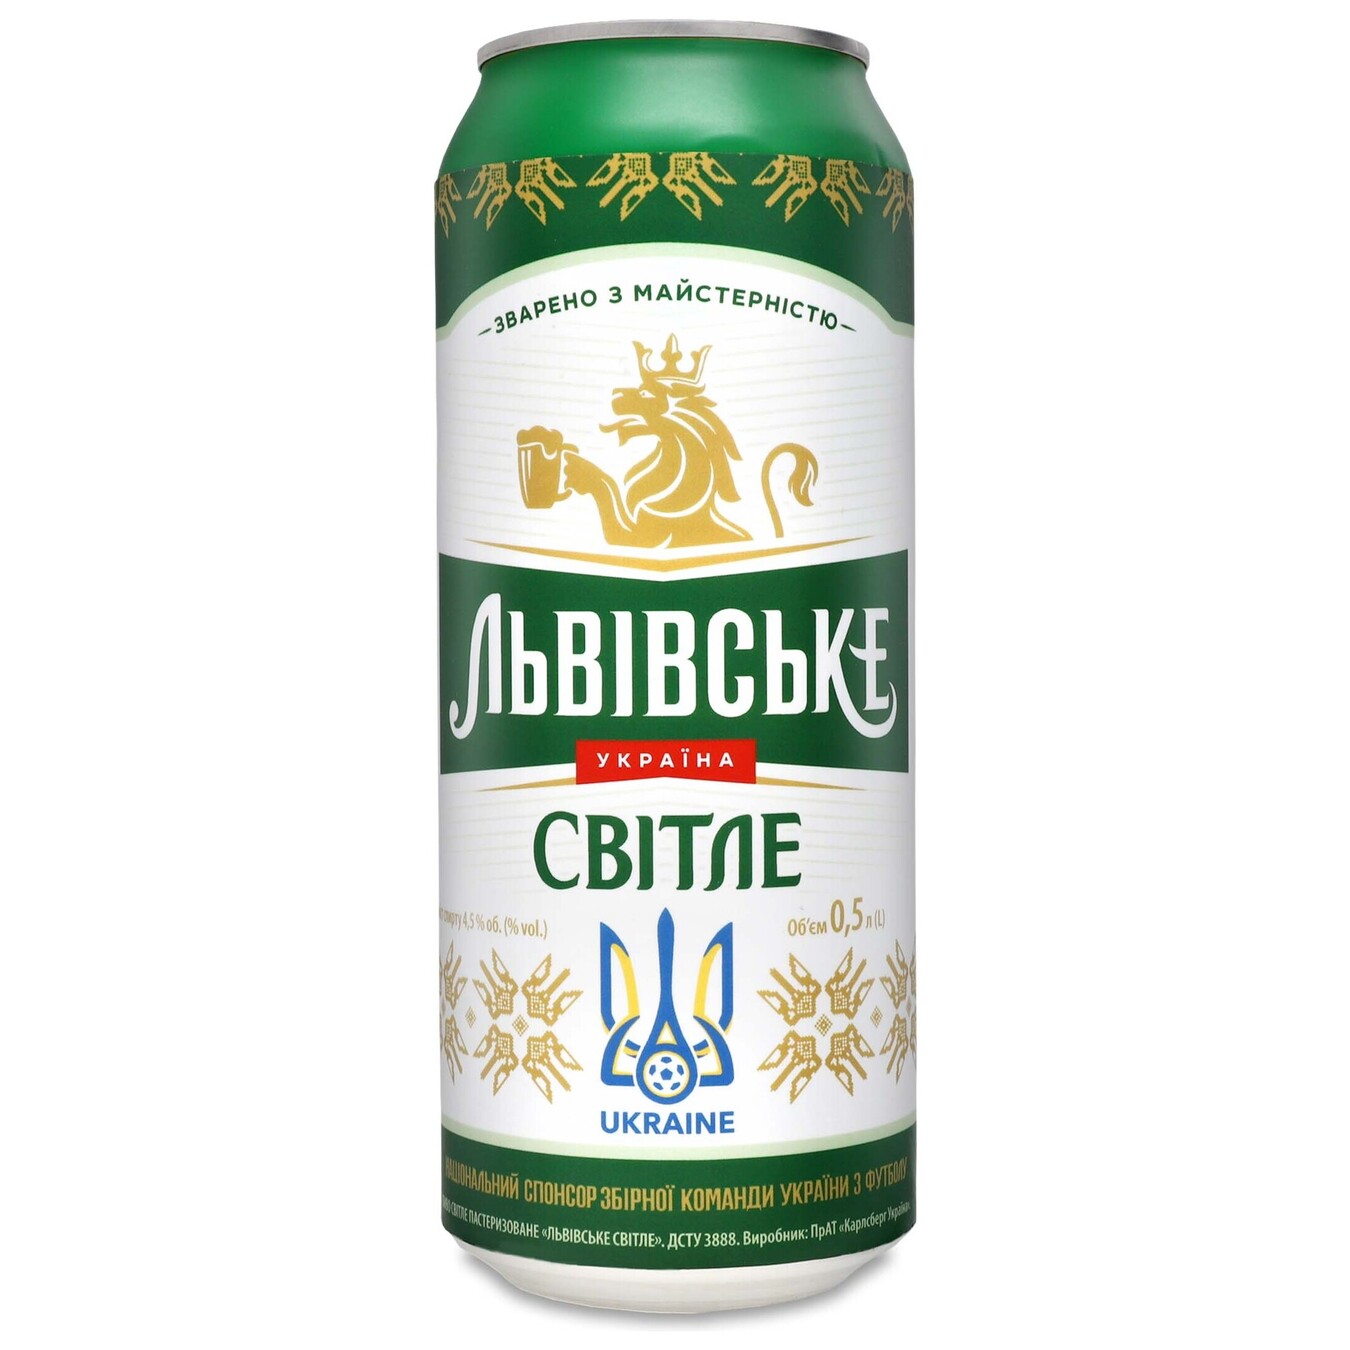 Lvivske light beer 4,5% 0,48l